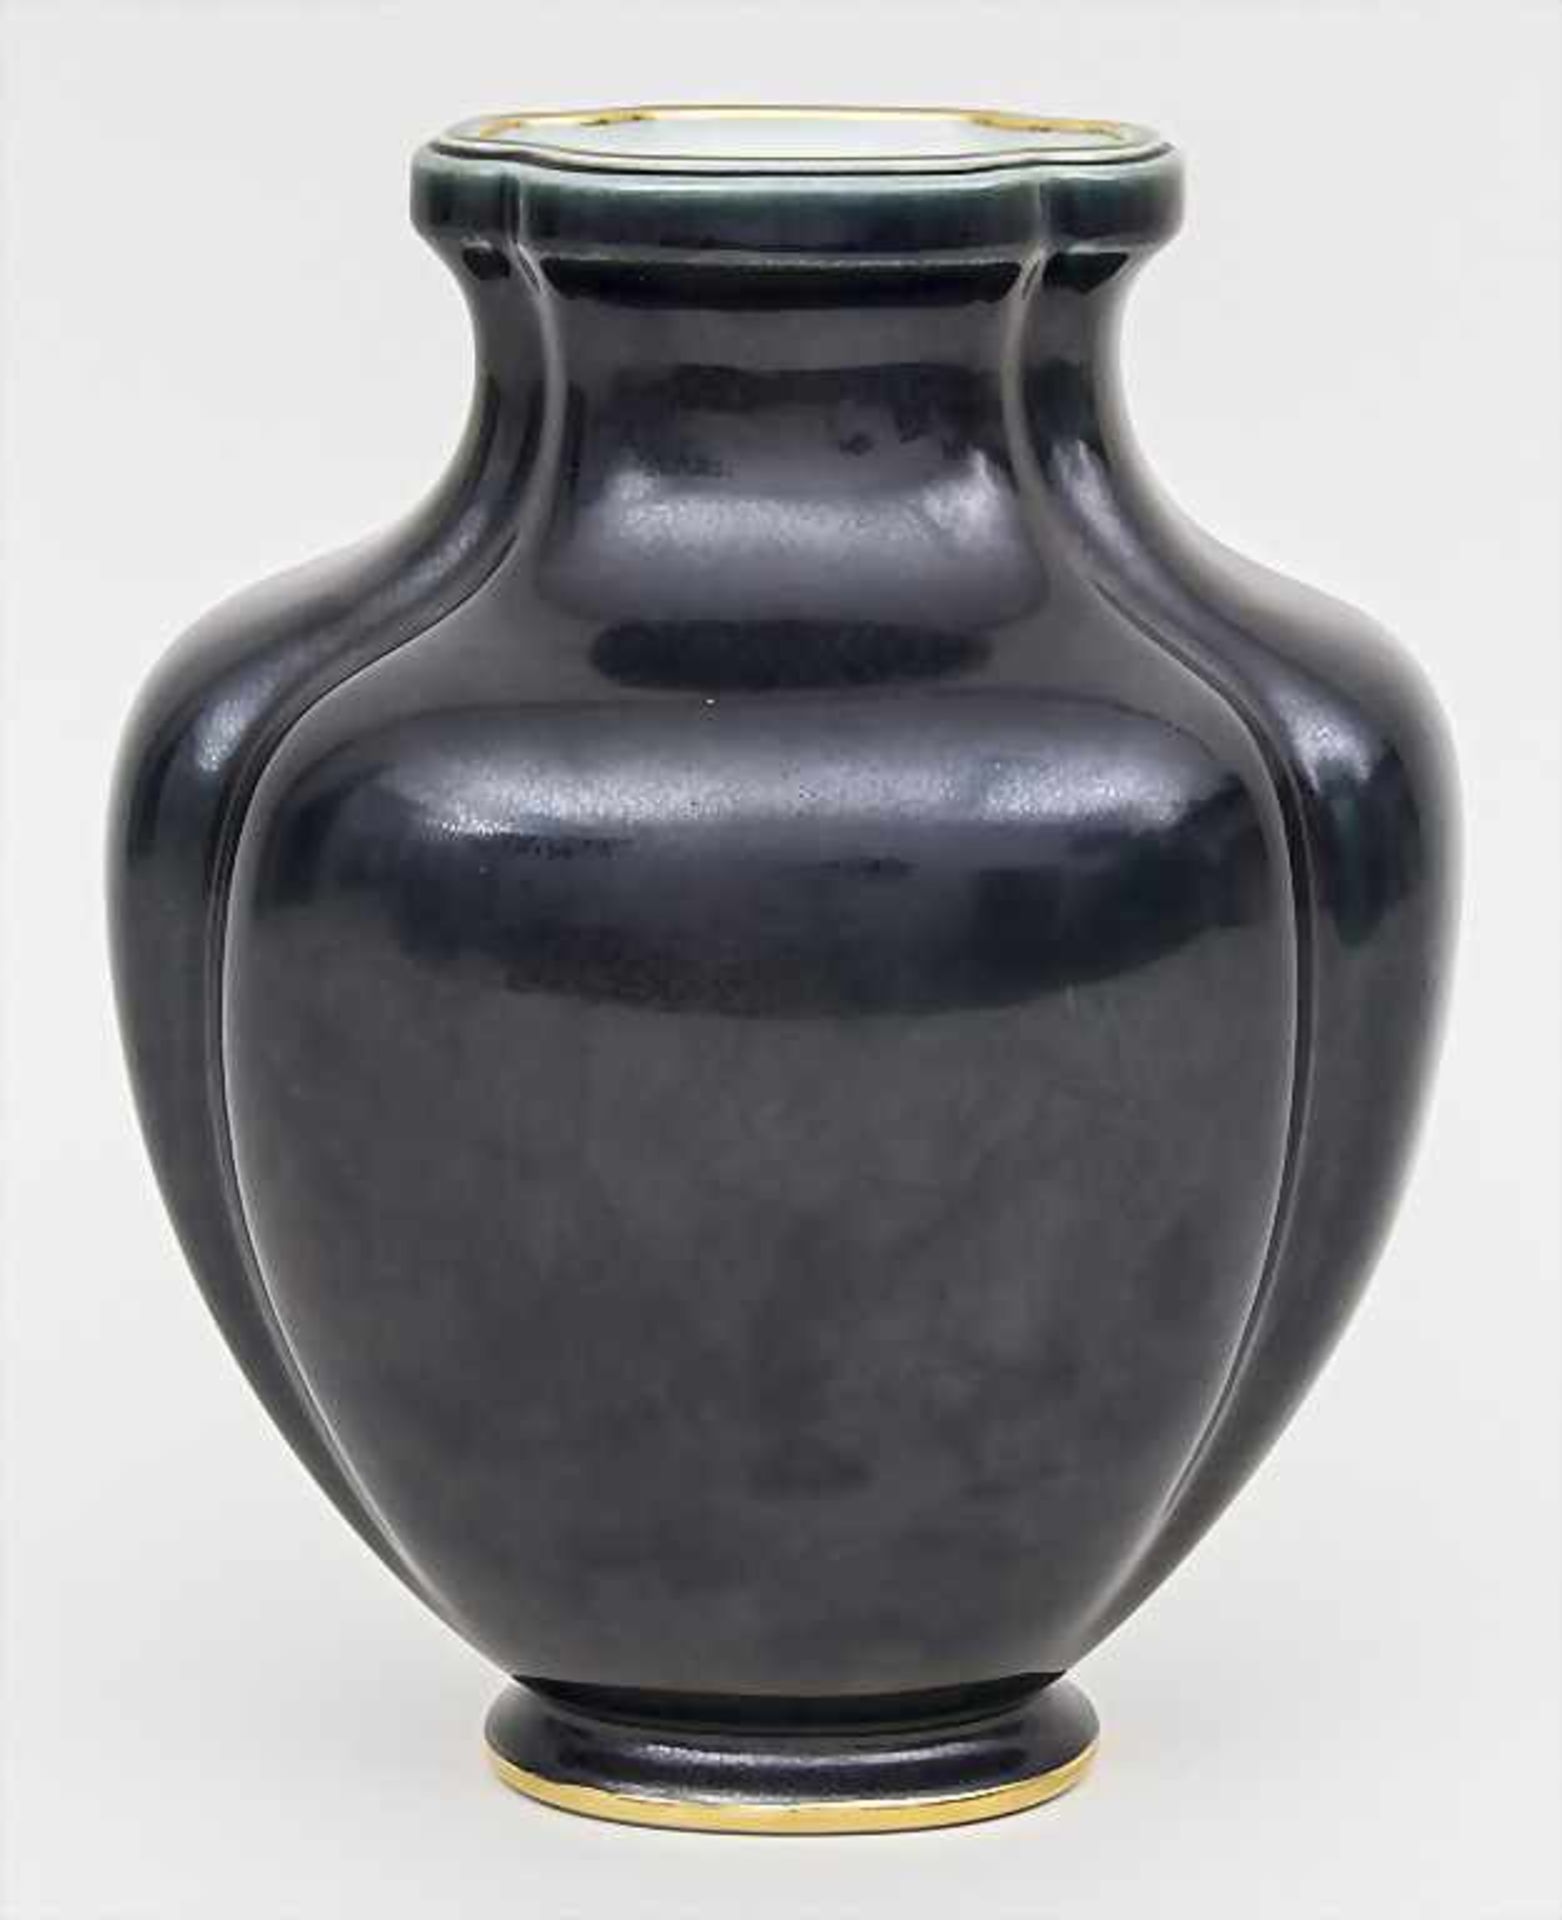 Schwarze Balustervase / A black baluster vase, Manufacture Nationale, Sèvres, 1996Material: